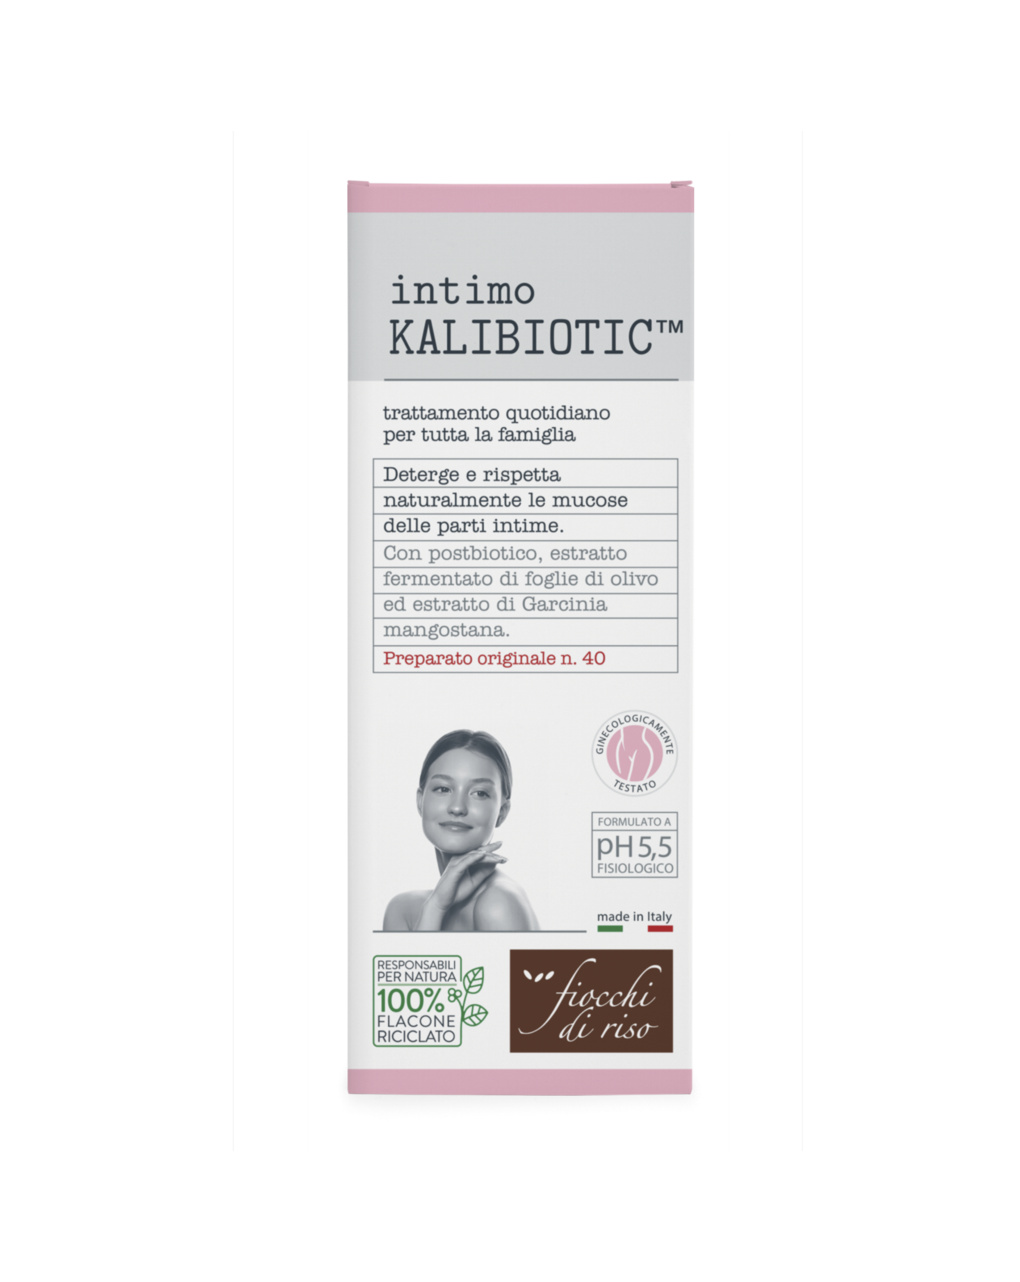 Intimo kalibiotic ph 5.5 | 240 ml - fiocchi di riso